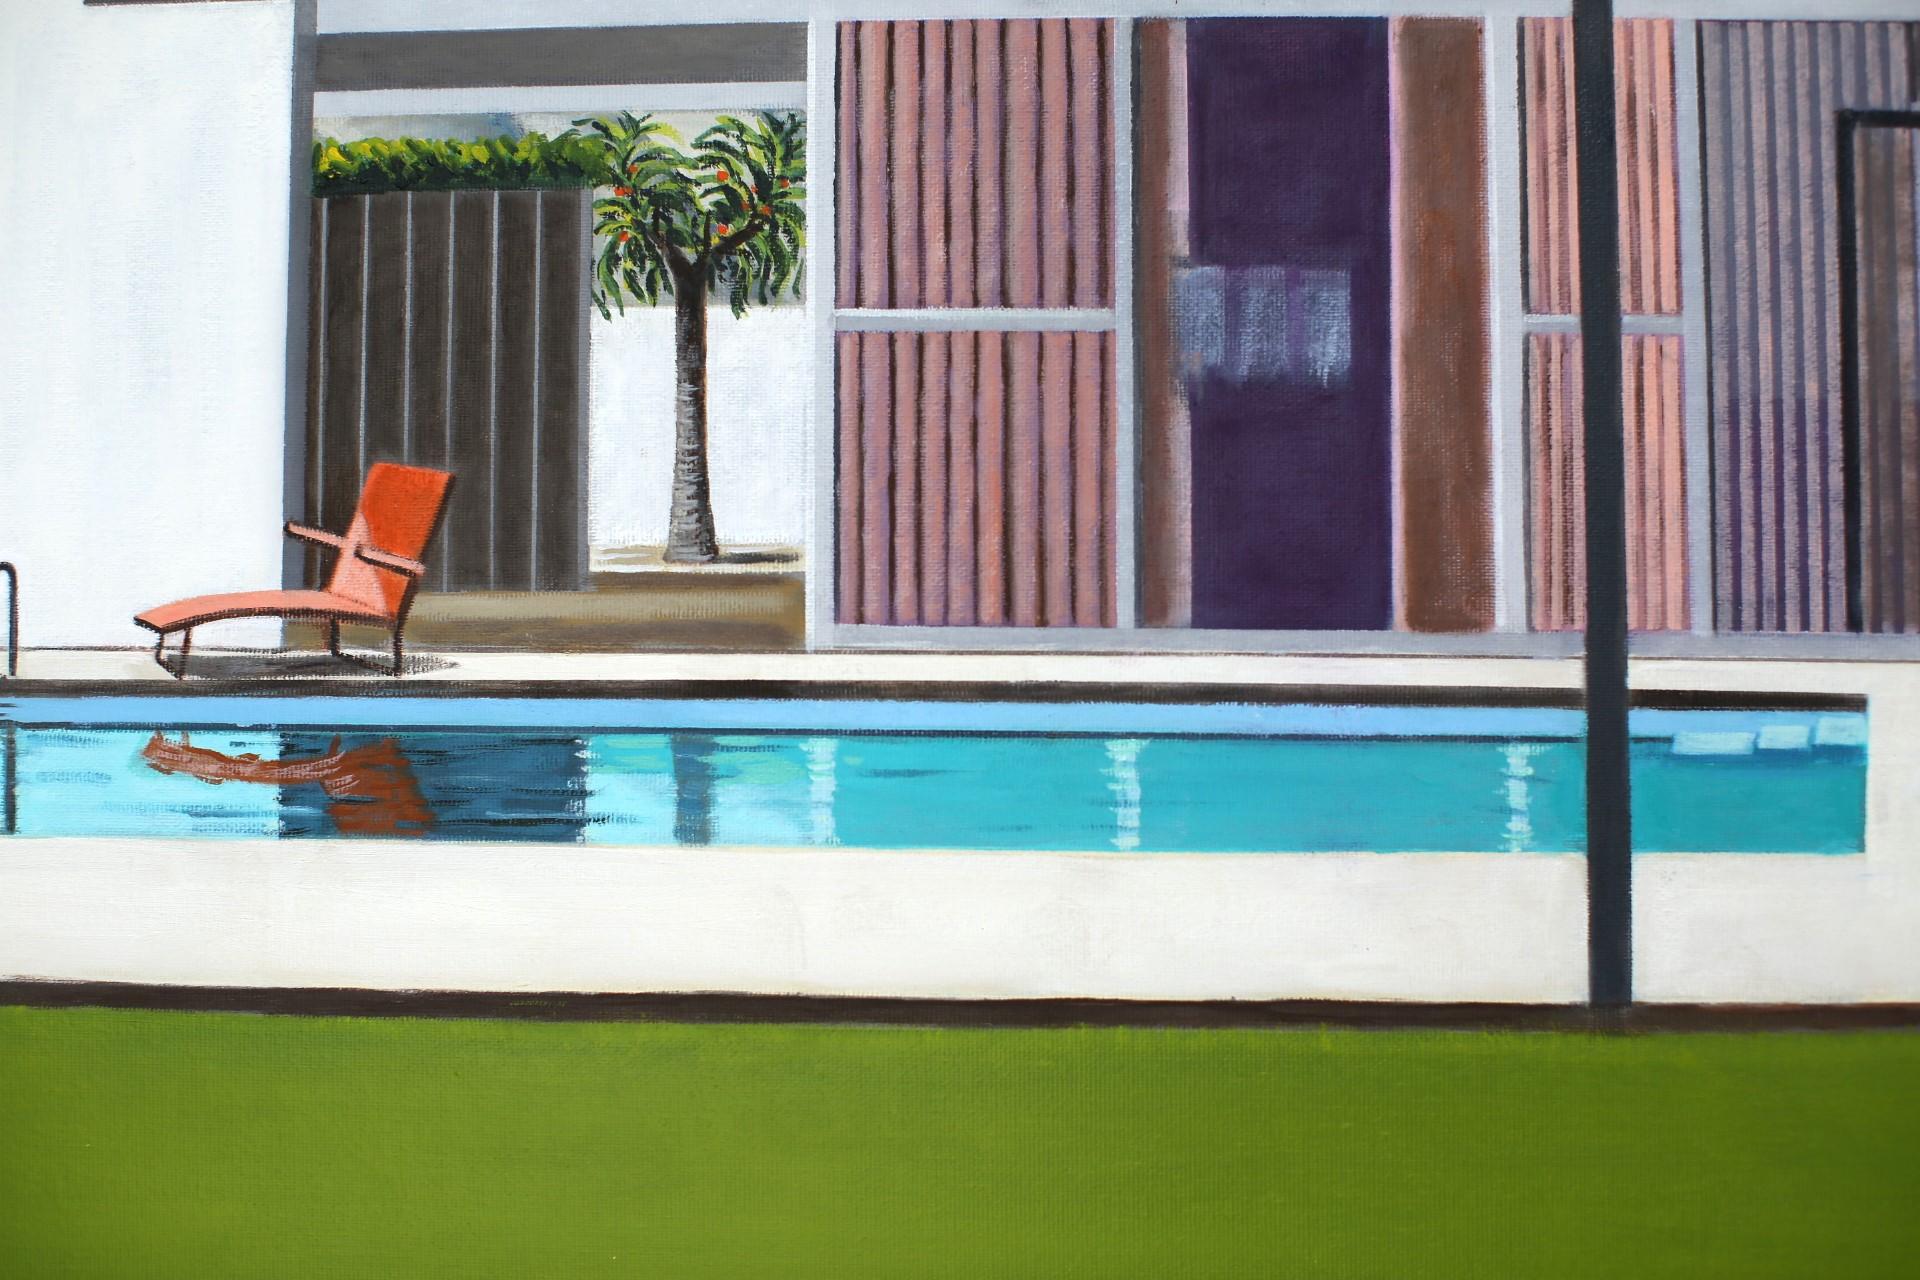 Cette peinture fait partie de ma série de peintures architecturales. Dans ce tableau particulier, j'ai joué avec les couleurs en ajoutant un ciel d'un rose cinématographique saisissant qui contraste avec une piscine turquoise et un jardin d'herbe